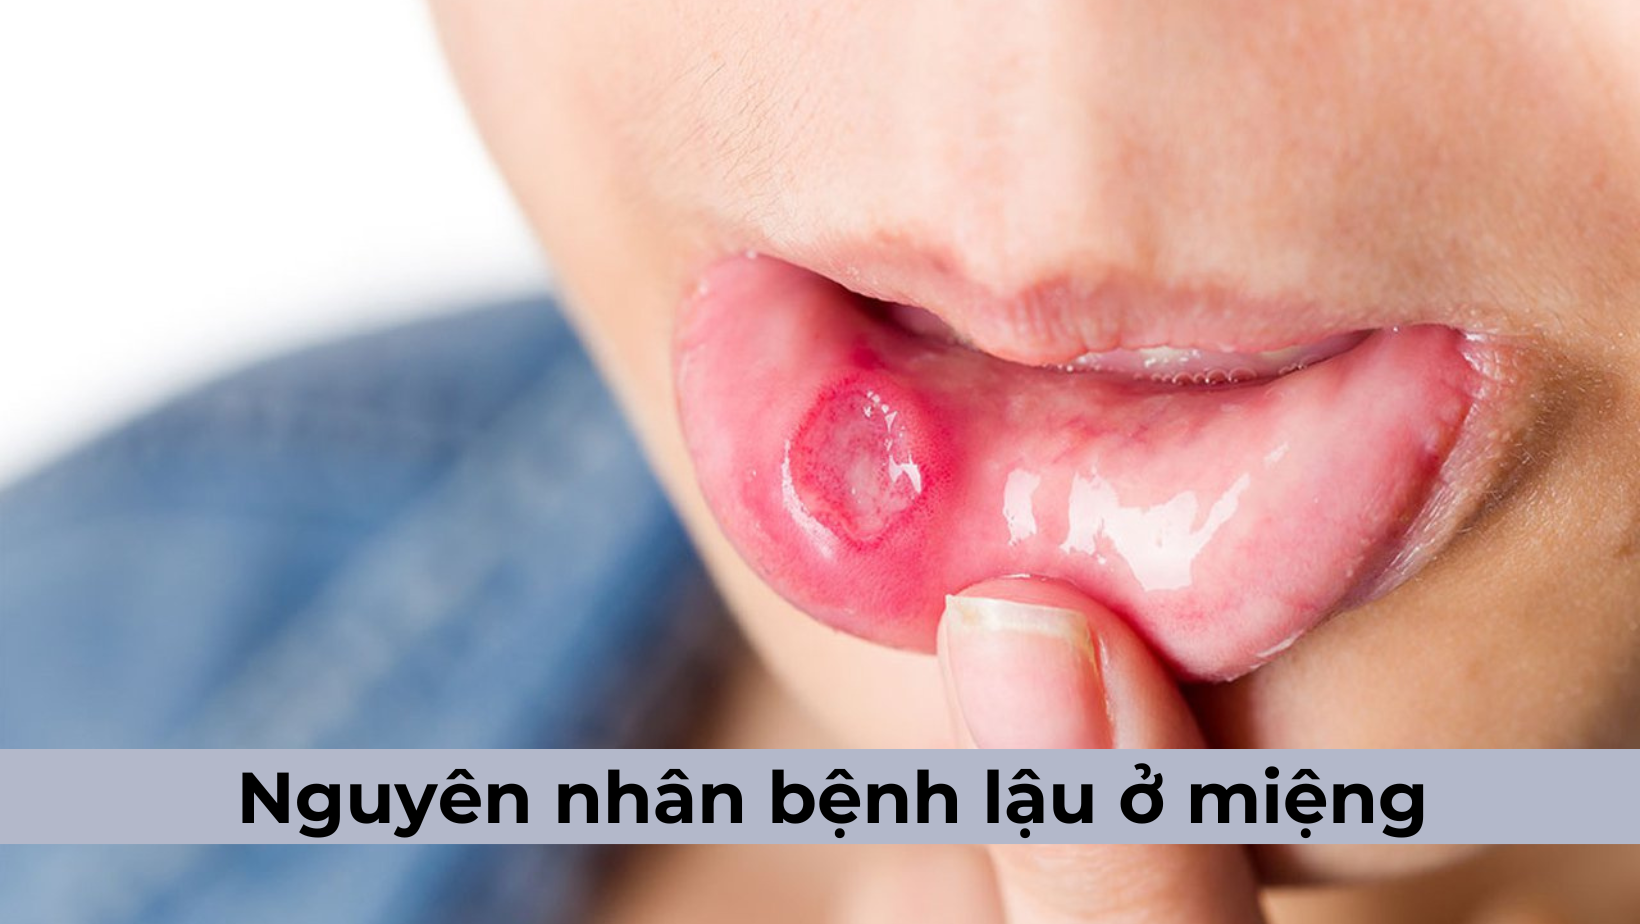 Nguyên nhân bệnh lậu ở miệng